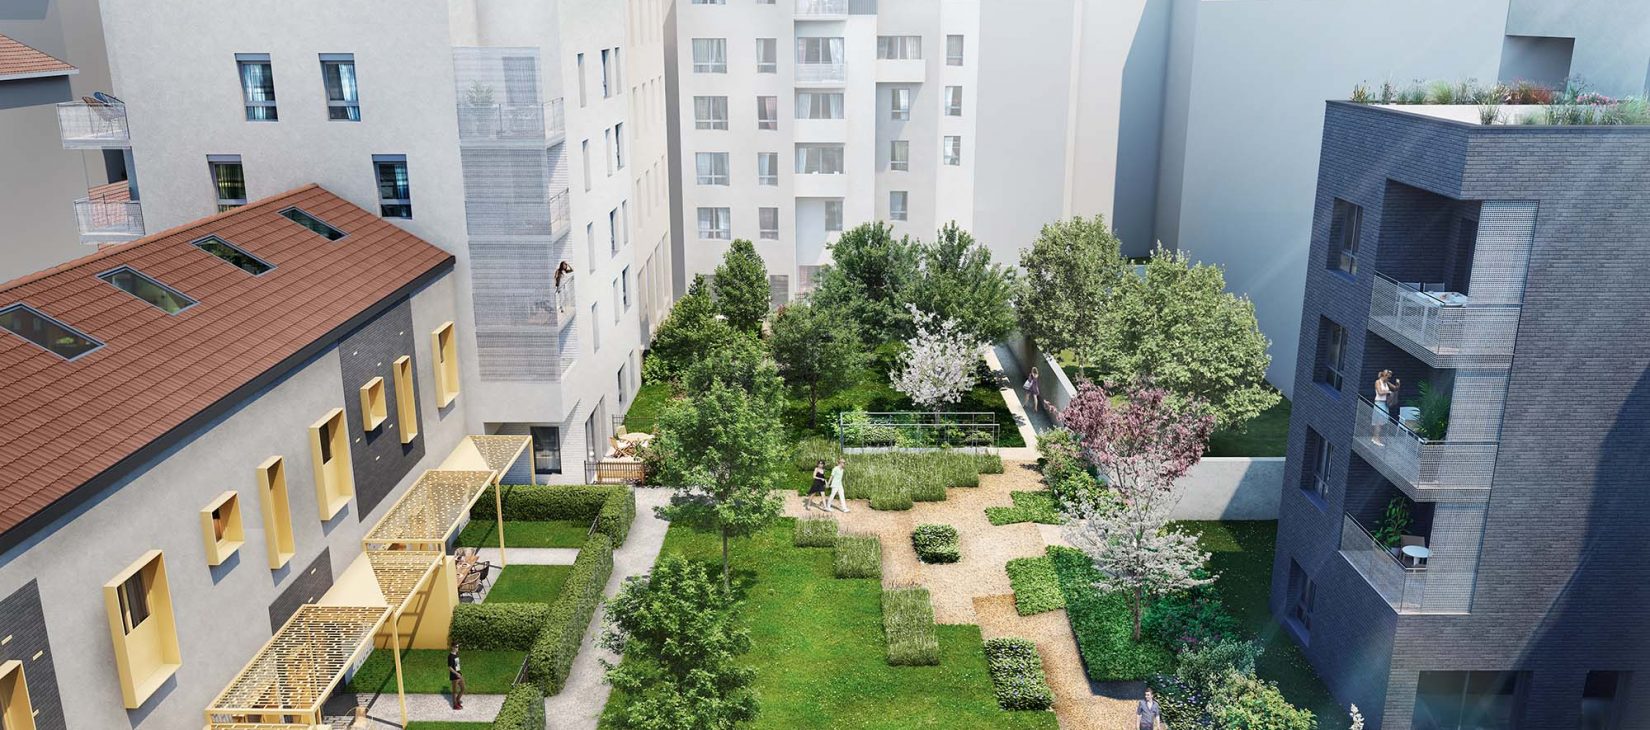 Achat appartement Lyon 6 : jardin intérieur de la résidence Ab'6 par Diagonale